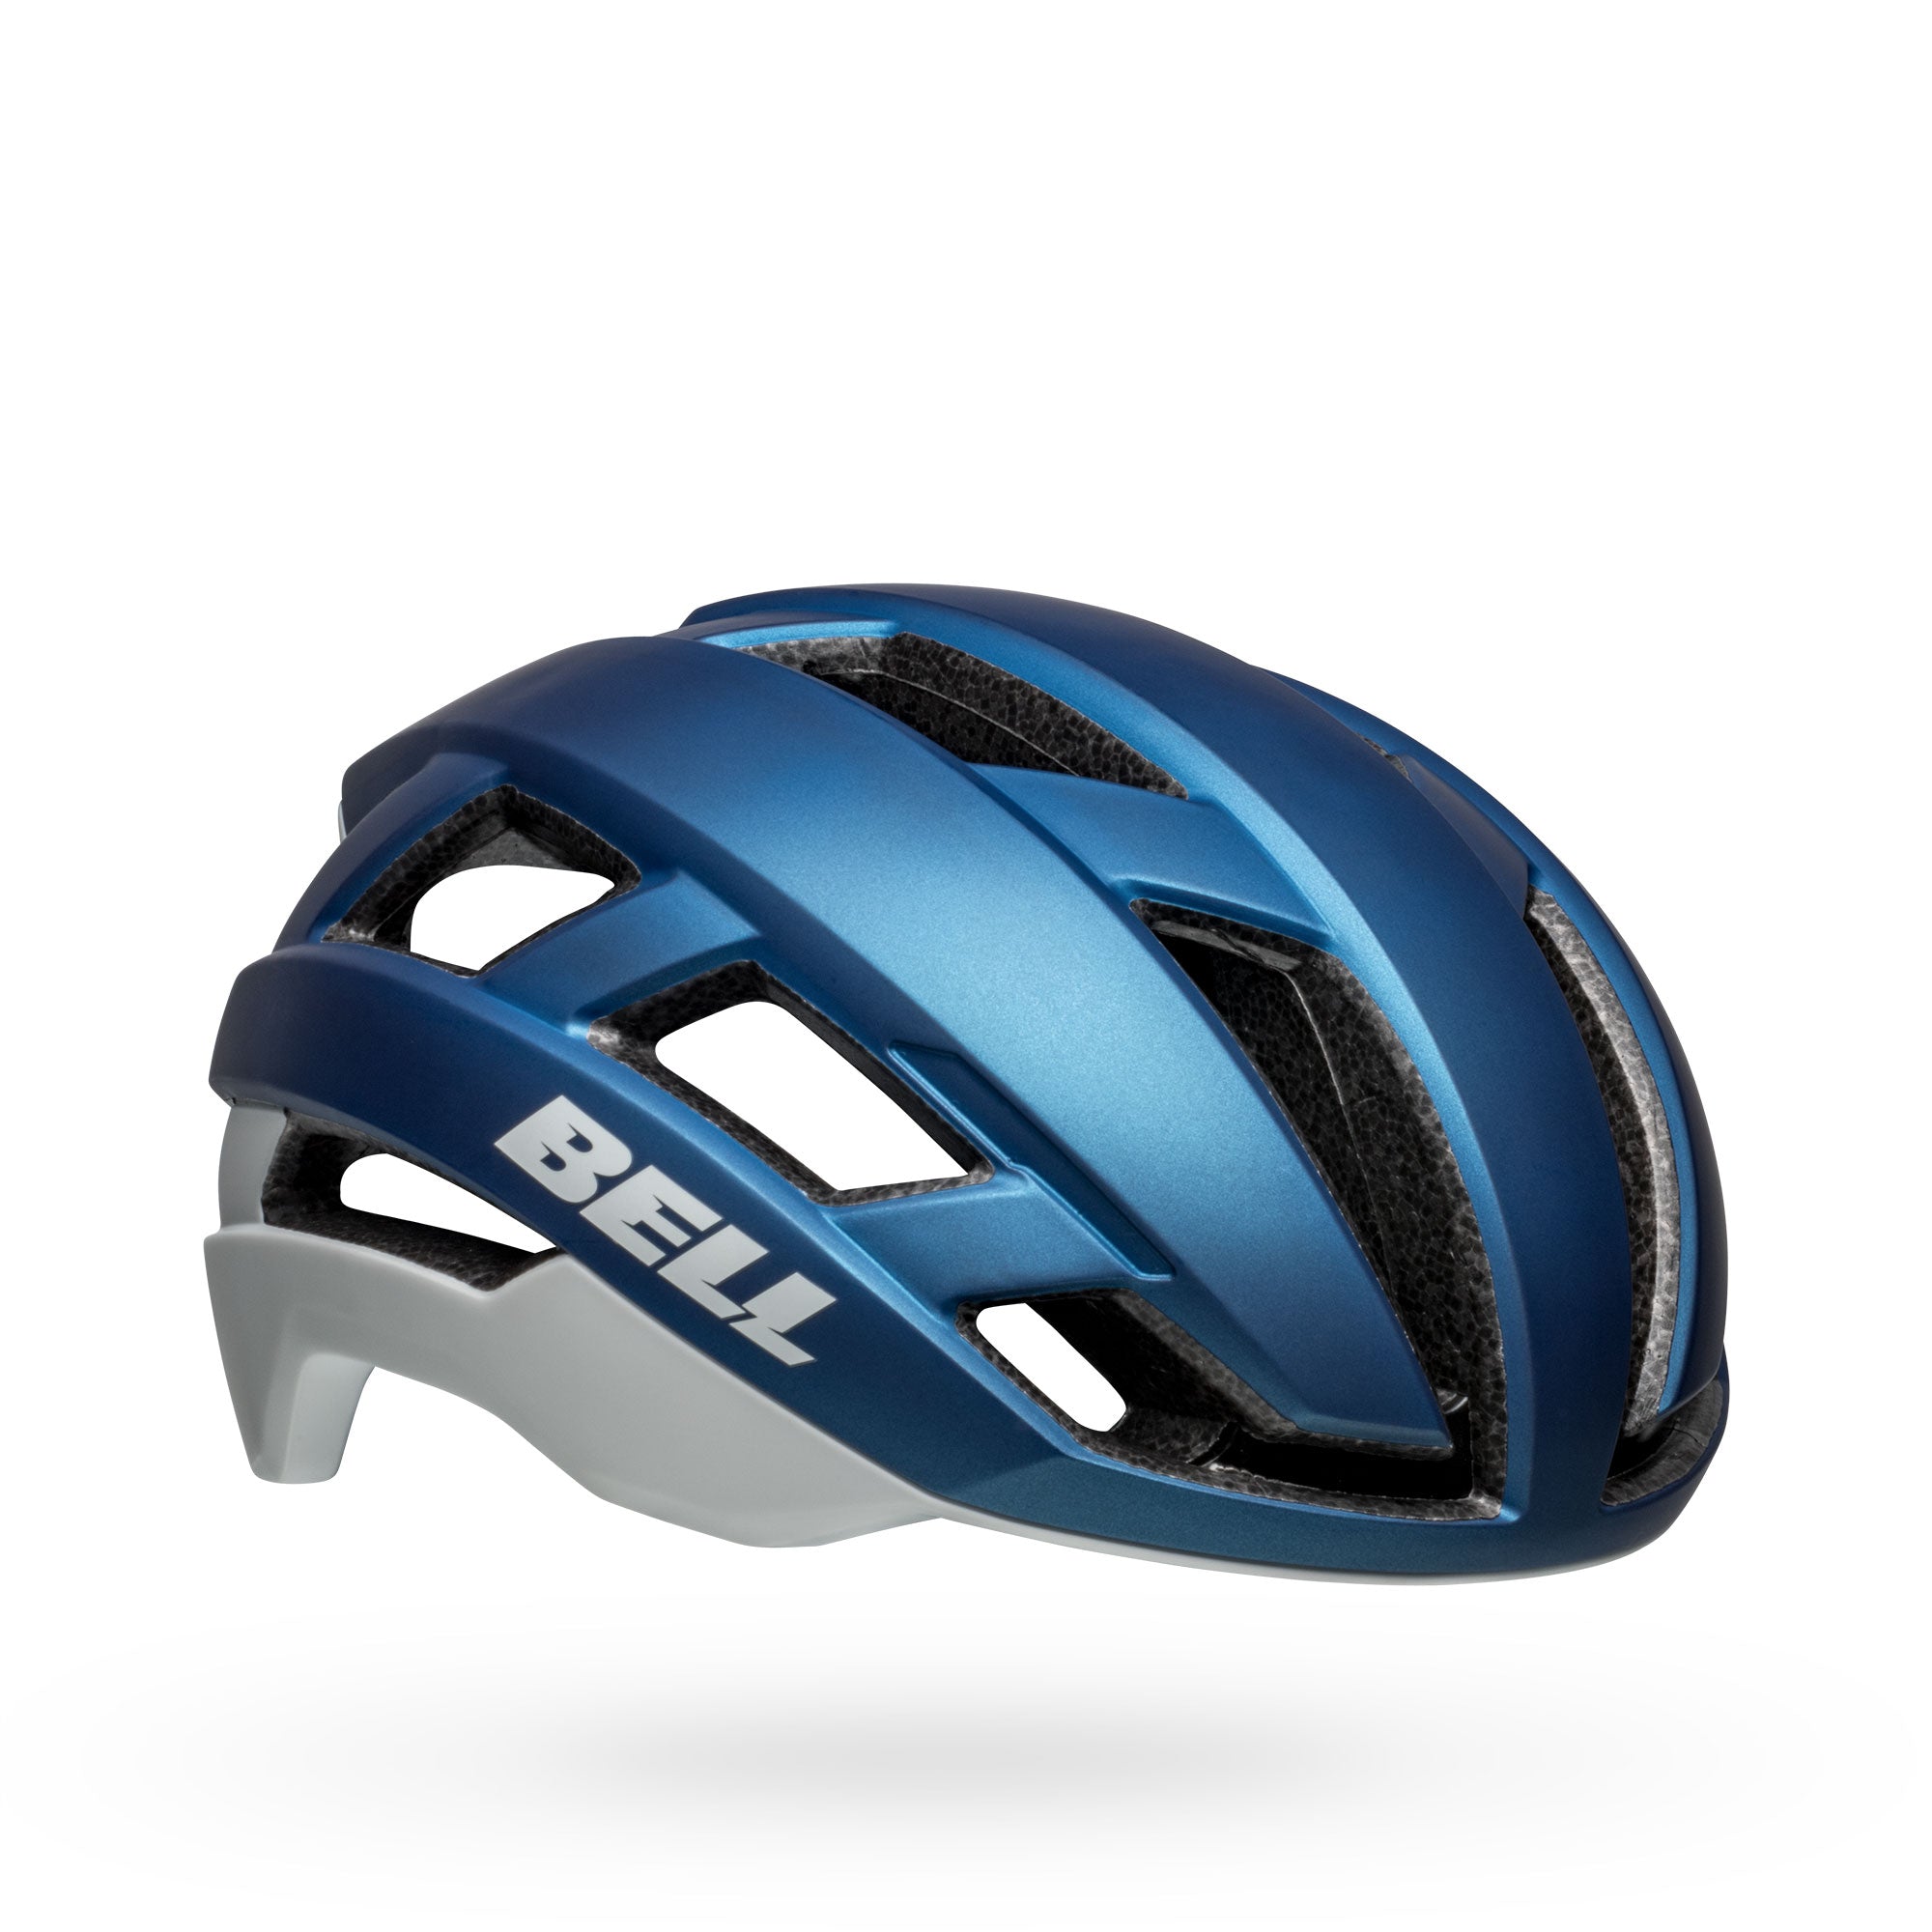 Bell Falcon XR LED MIPS Helmet - Matte Blue/Grey